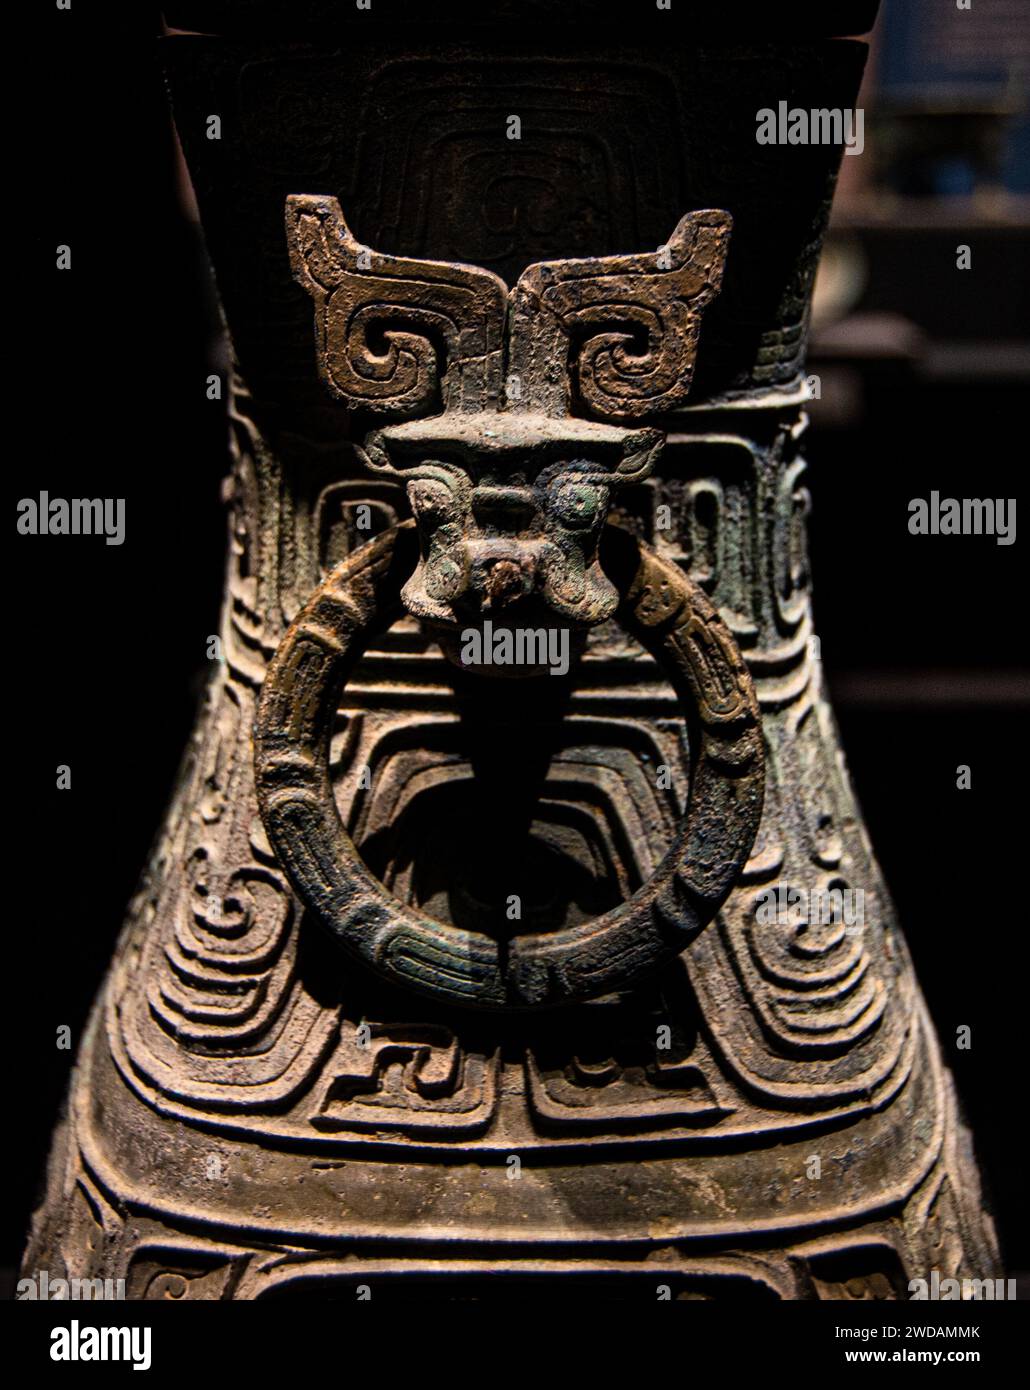 Un gros plan des objets en bronze du musée provincial du Hubei présente des motifs exquis et des décorations de tête de vache réalistes. Banque D'Images